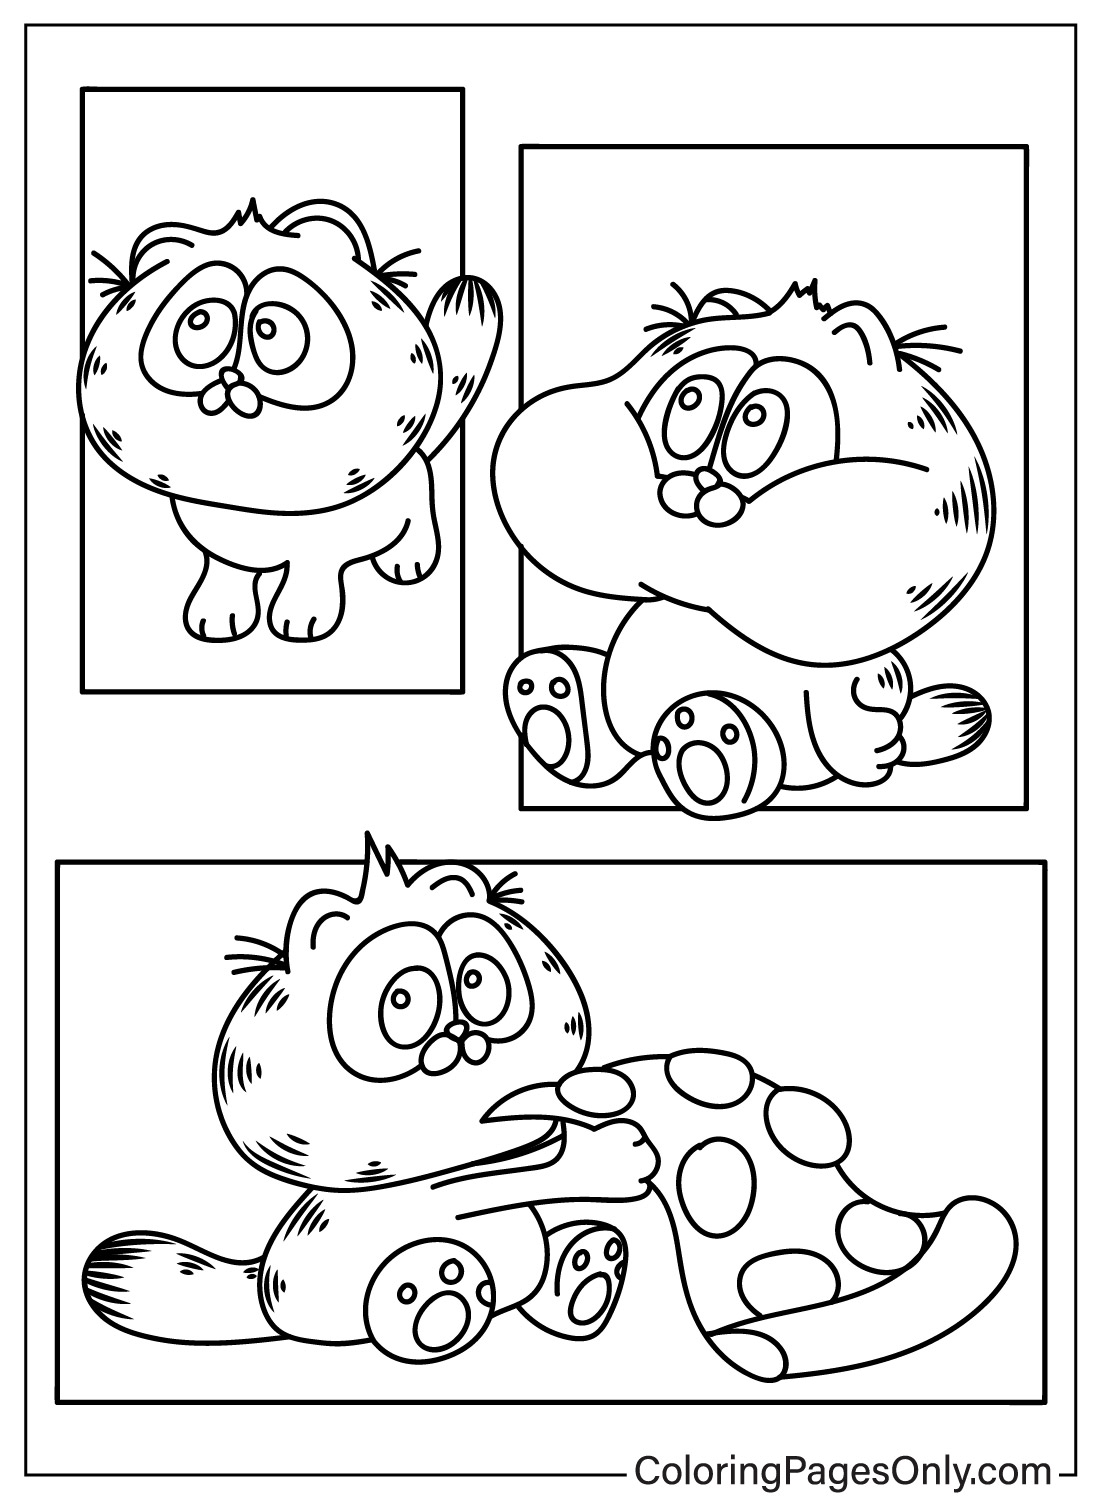 Simpatica pagina da colorare di Garfield da Garfield